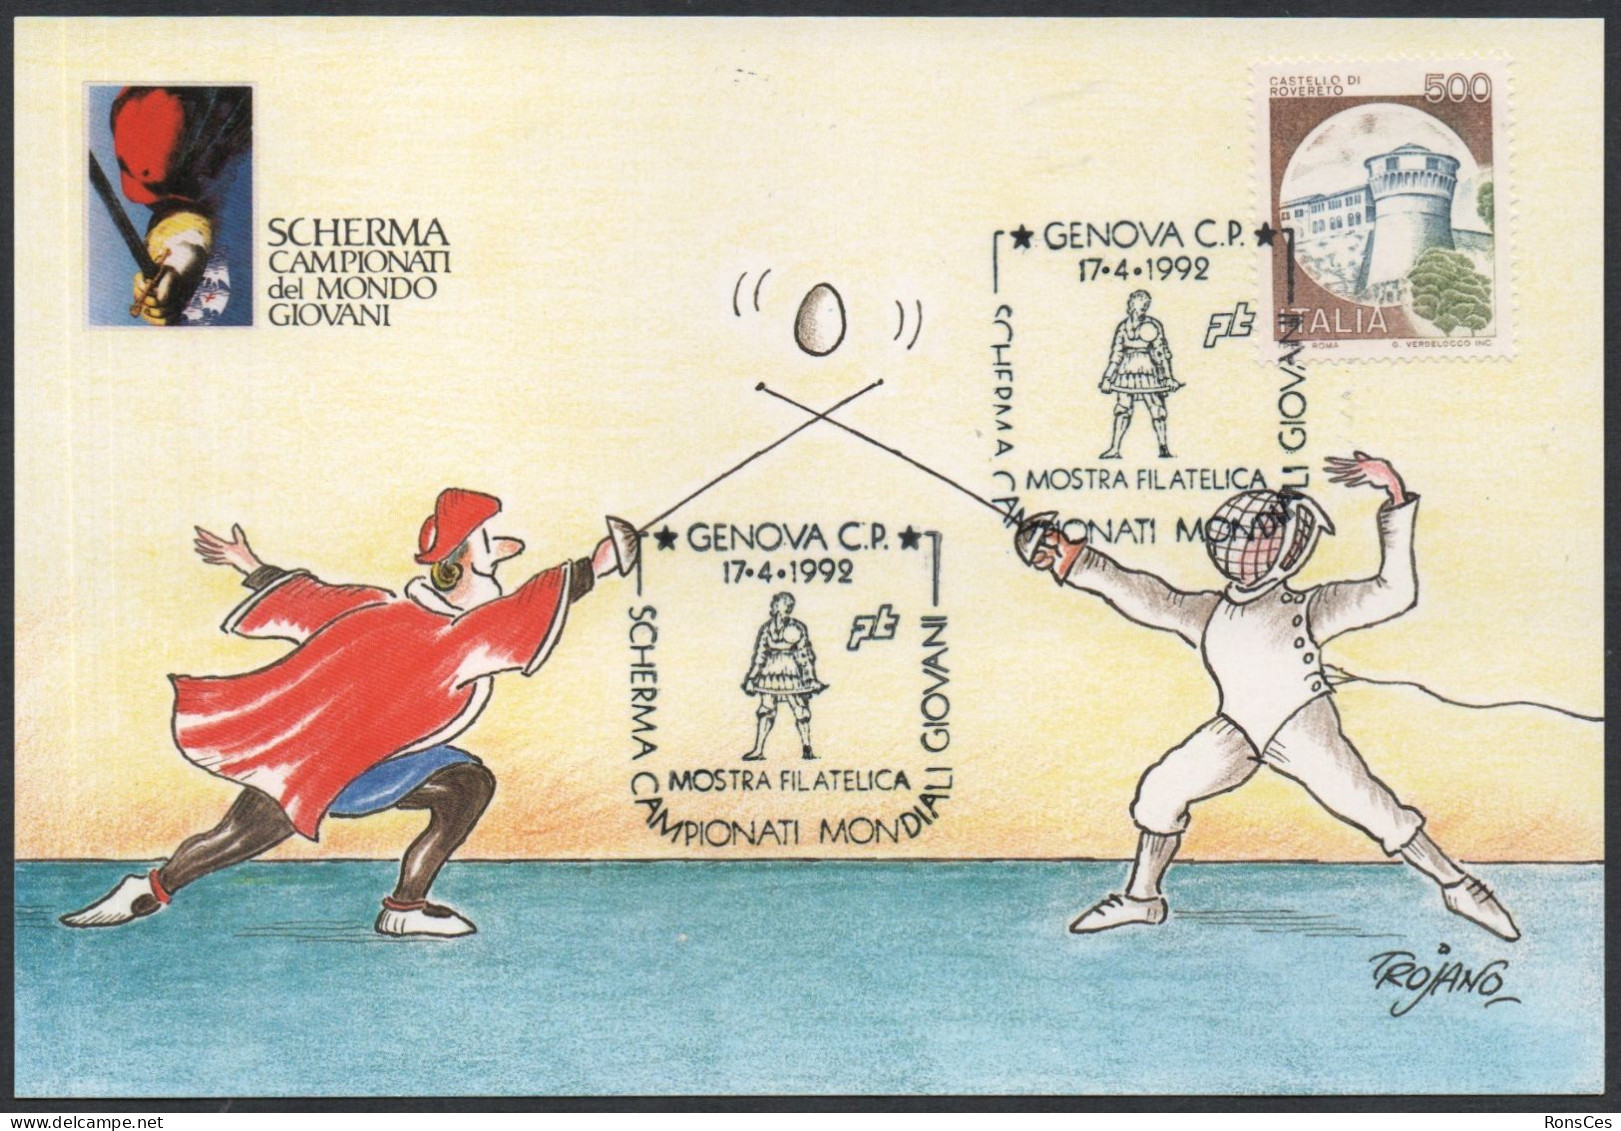 FENCING - ITALIA GENOVA 1992  CAMPIONATI MONDIALI GIOVANILI DI SCHERMA - MOSTRA FILATELICA - CARTOLINA MAXIMUM UIFOS - A - Fencing